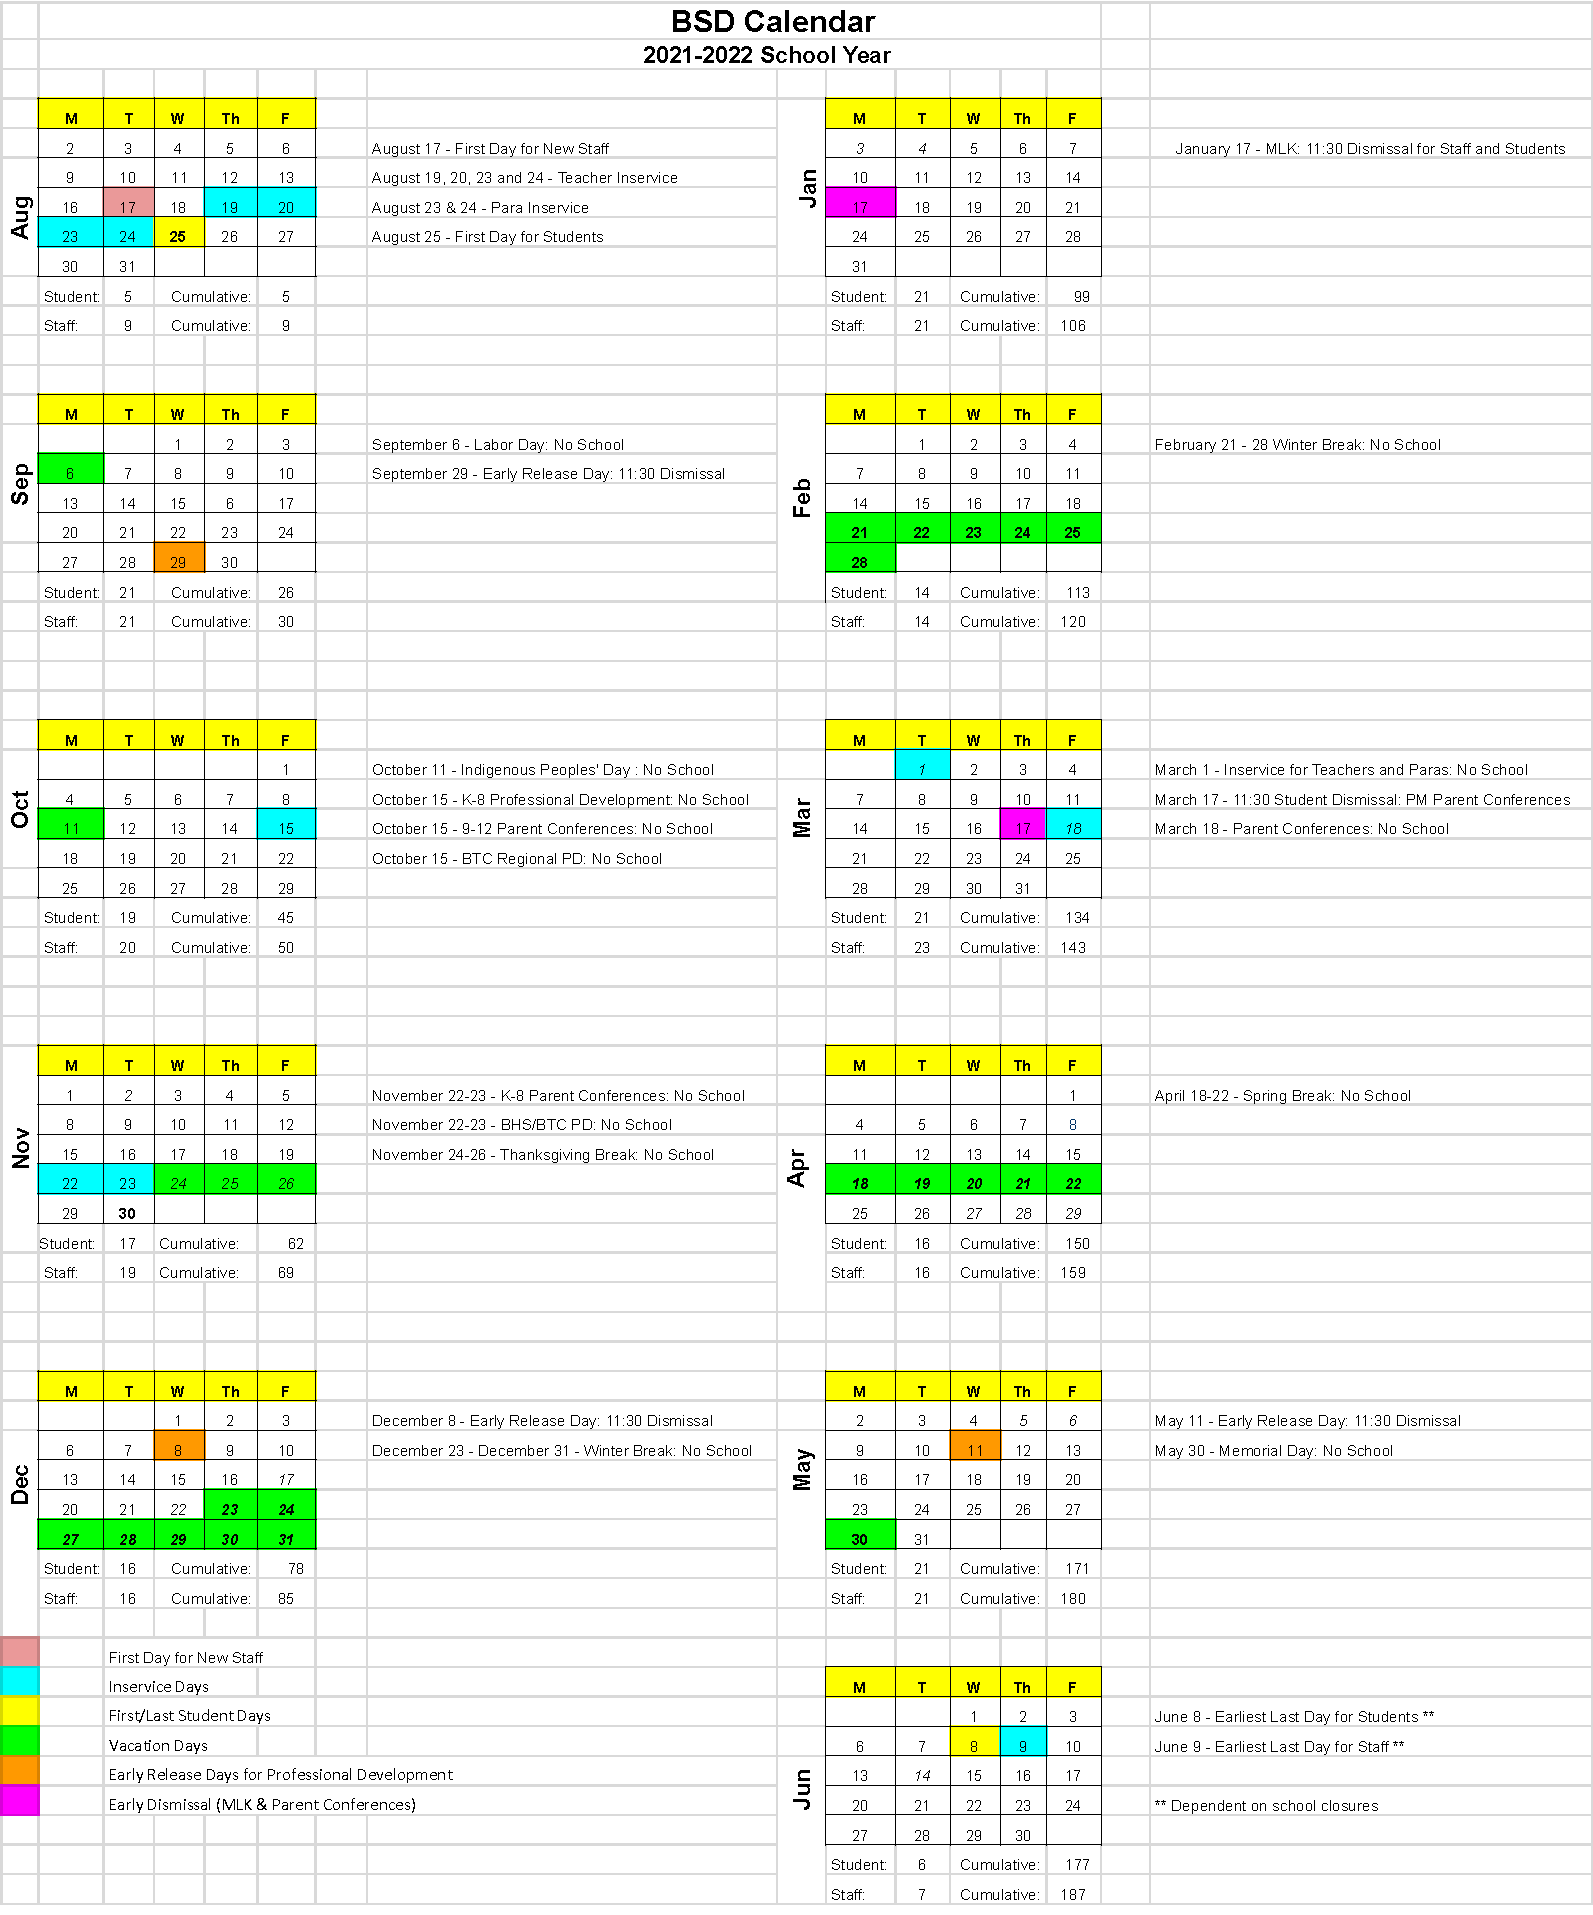 BSD-2021-2022-Calendar-at-a-Glance-4.6.21-1